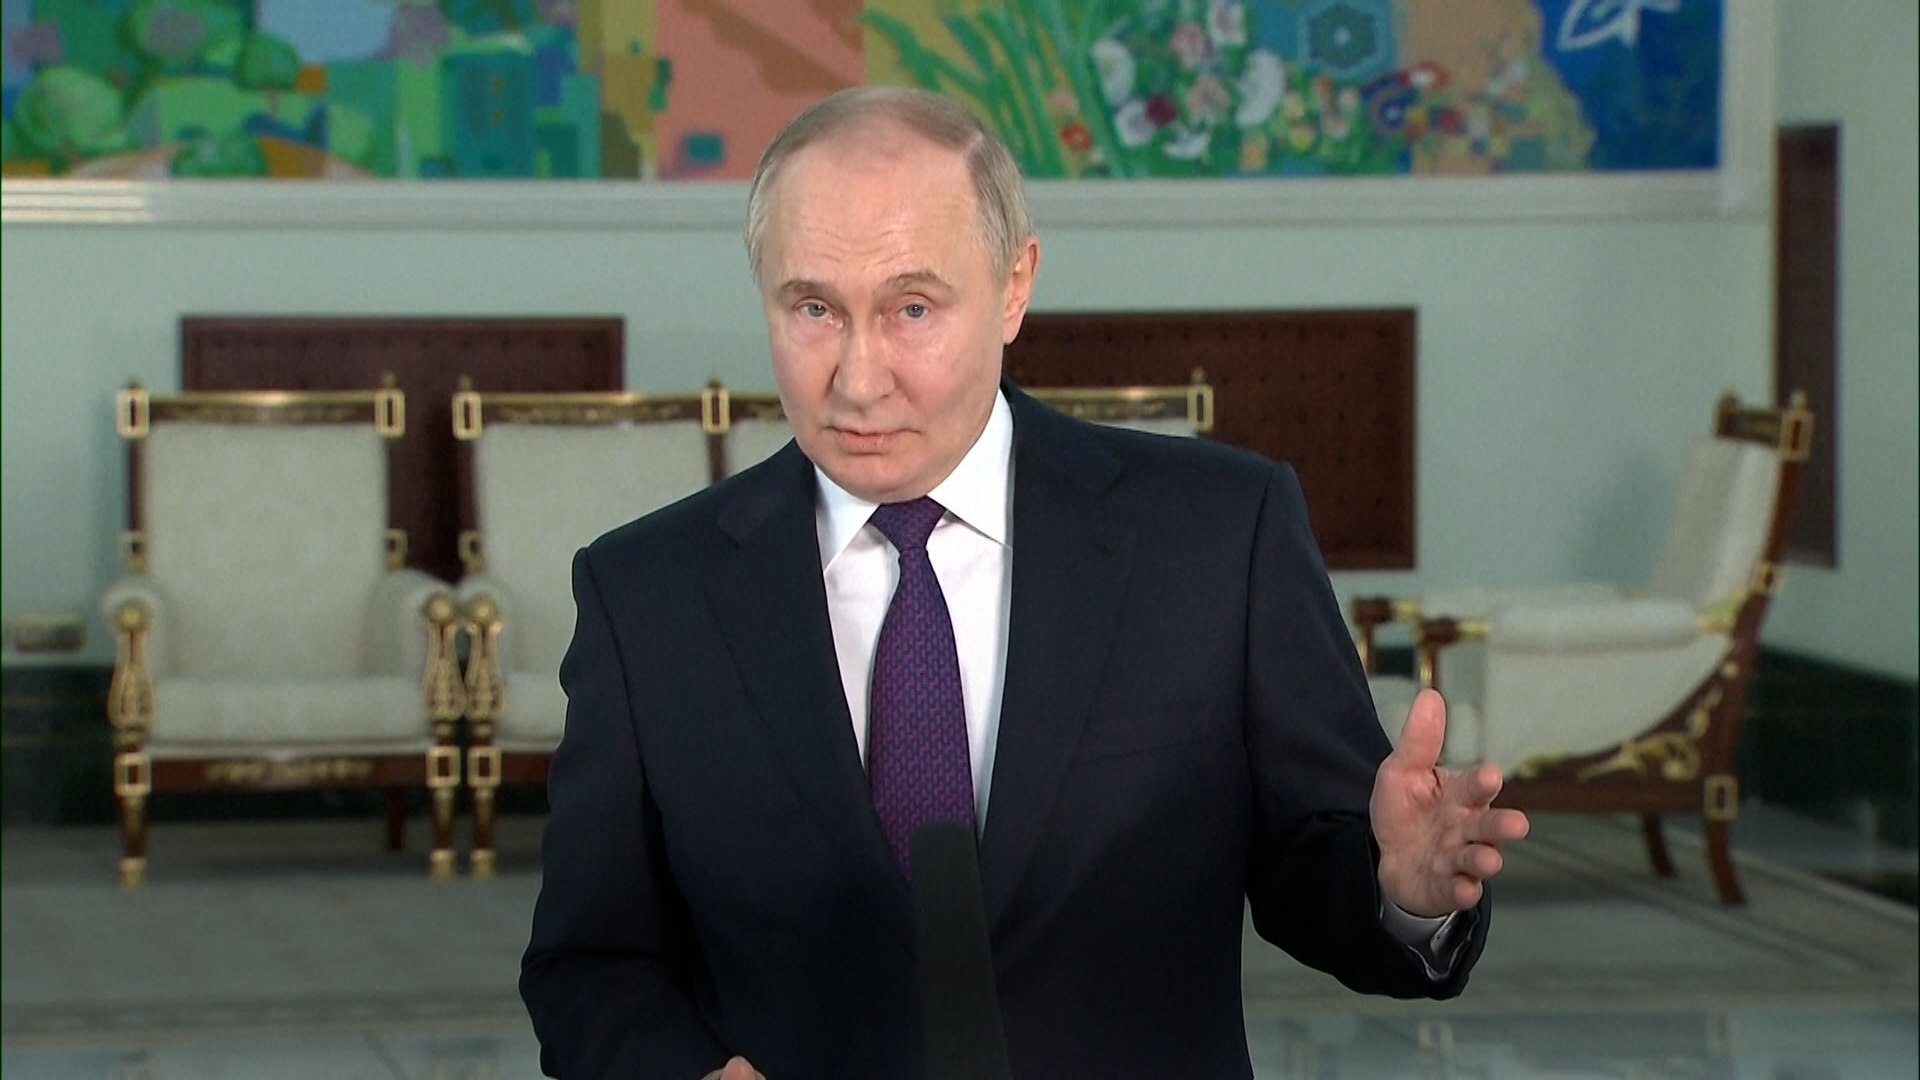 Putin, amenazante y muy enfadado tras las ltimas ayudas de Espaa y Europa a Ucrania: "Deberan ser conscientes de lo que se juegan"